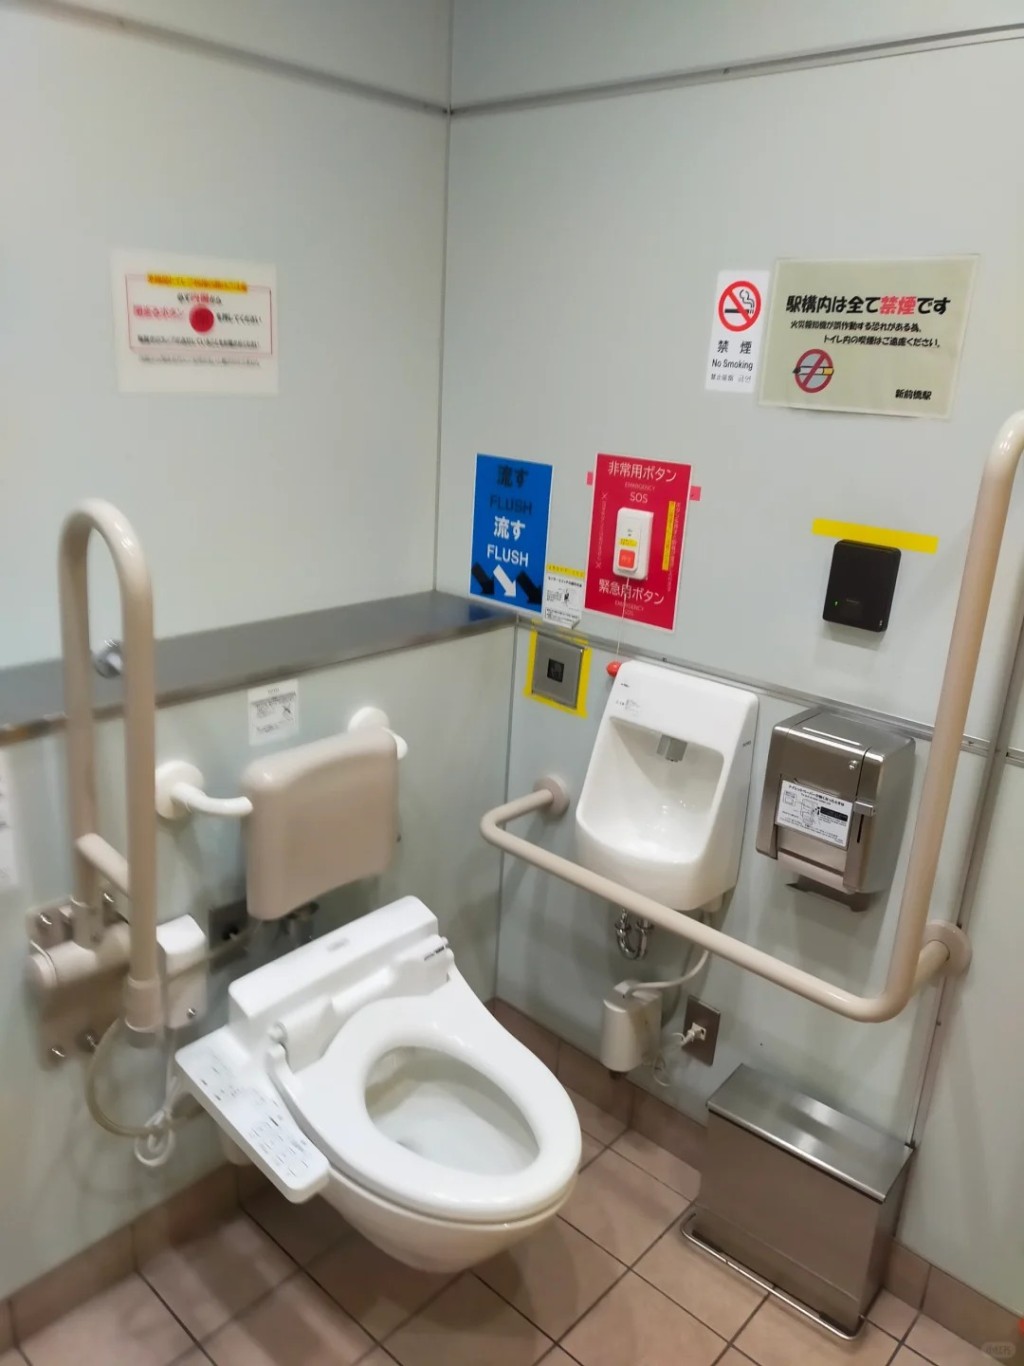 日本公共場所內的無障礙廁所。